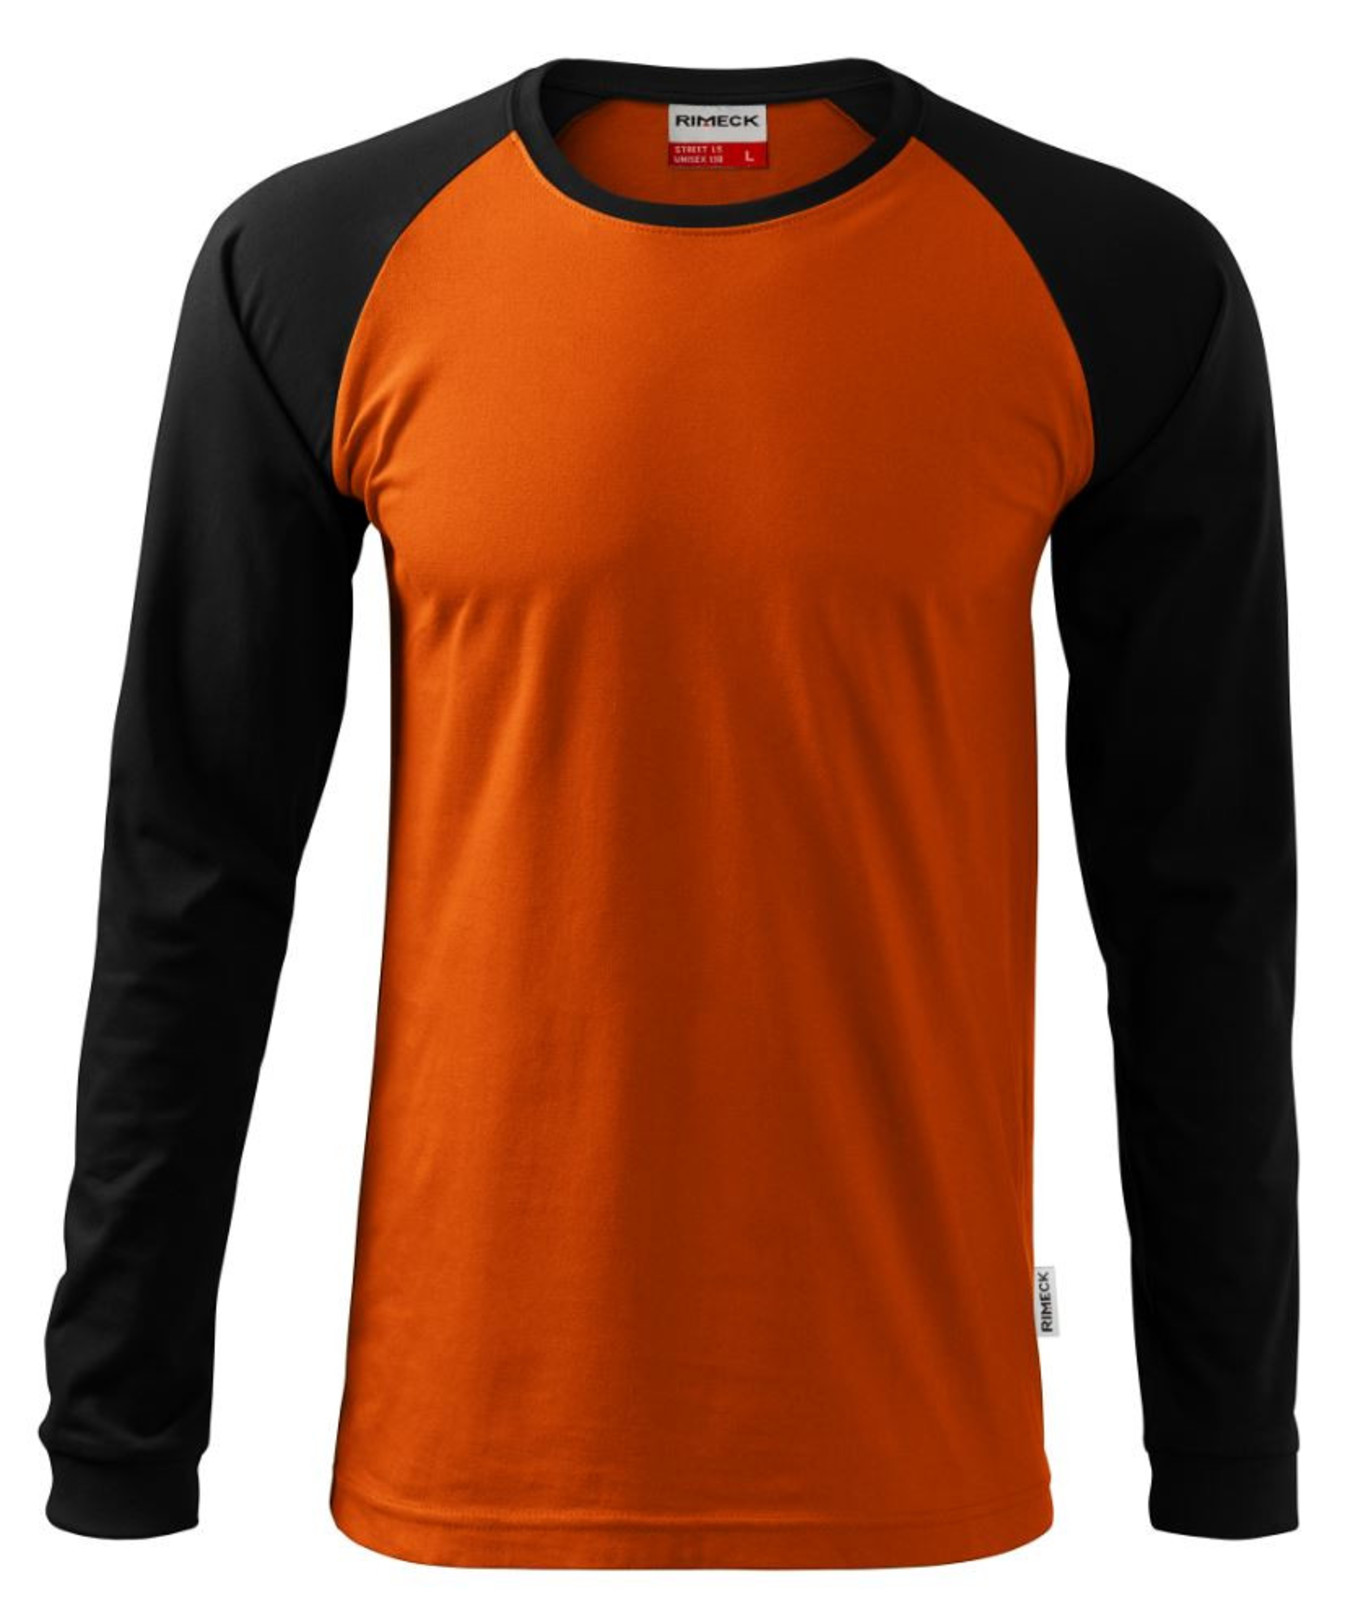 Unisex tričko s dlhým rukávom Rimeck Street LS 130 - veľkosť: XXL, farba: oranžová/čierna